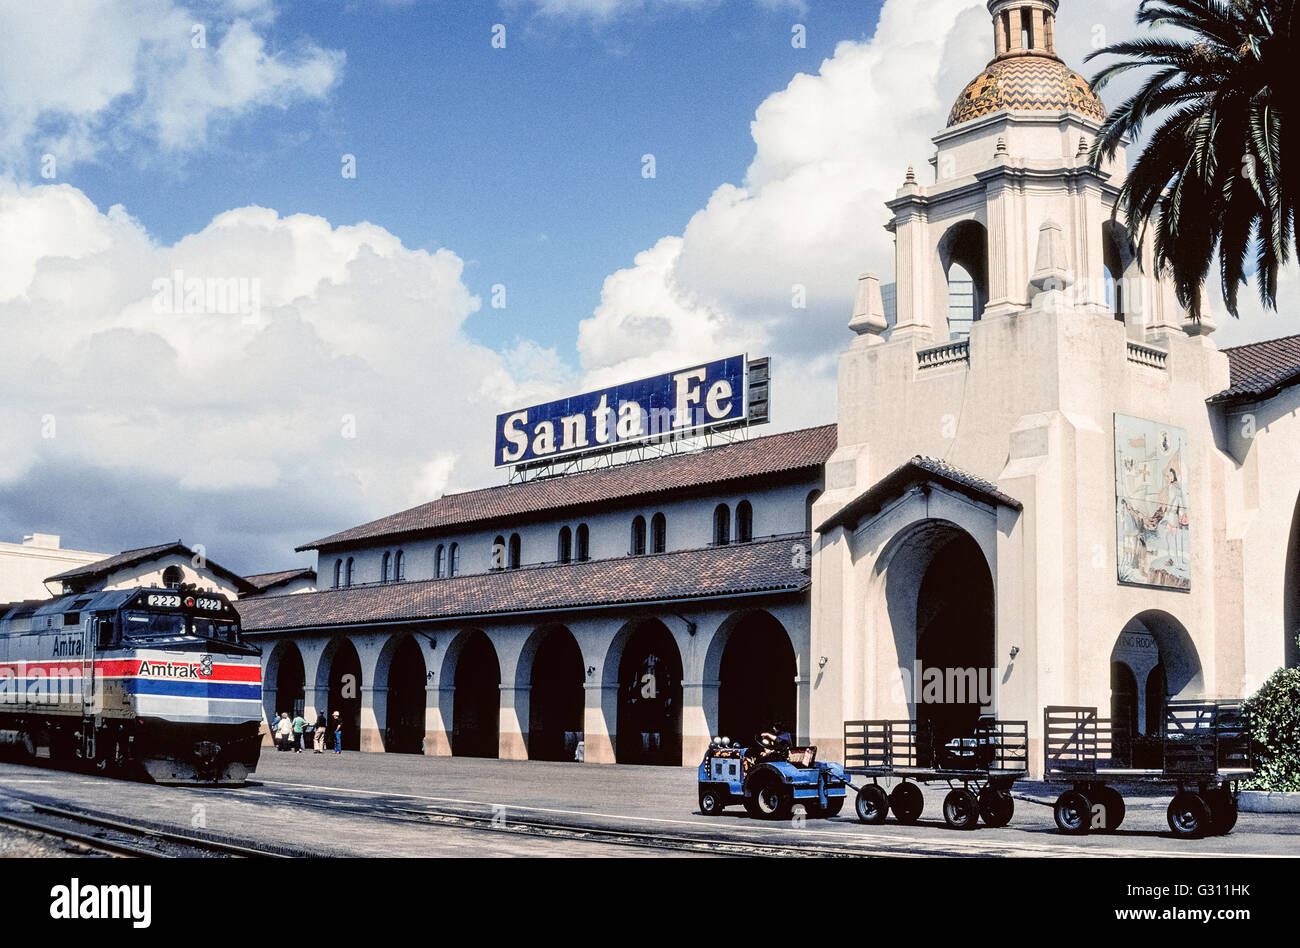 Le Santa Fe Depot est une ancienne station de train qui a ouvert en 1915 comme l'extrémité sud de l'Atchison, Topeka and Santa Fe Railway dans le centre-ville de San Diego, Californie, USA. Reconnue pour son style néo-Mission de l'architecture, le dépôt maintenant sert des chariots de banlieue ainsi qu'Amtrak, le National Railroad Passenger avec des trains qui vont du nord de Los Angeles et de destinations. Banque D'Images